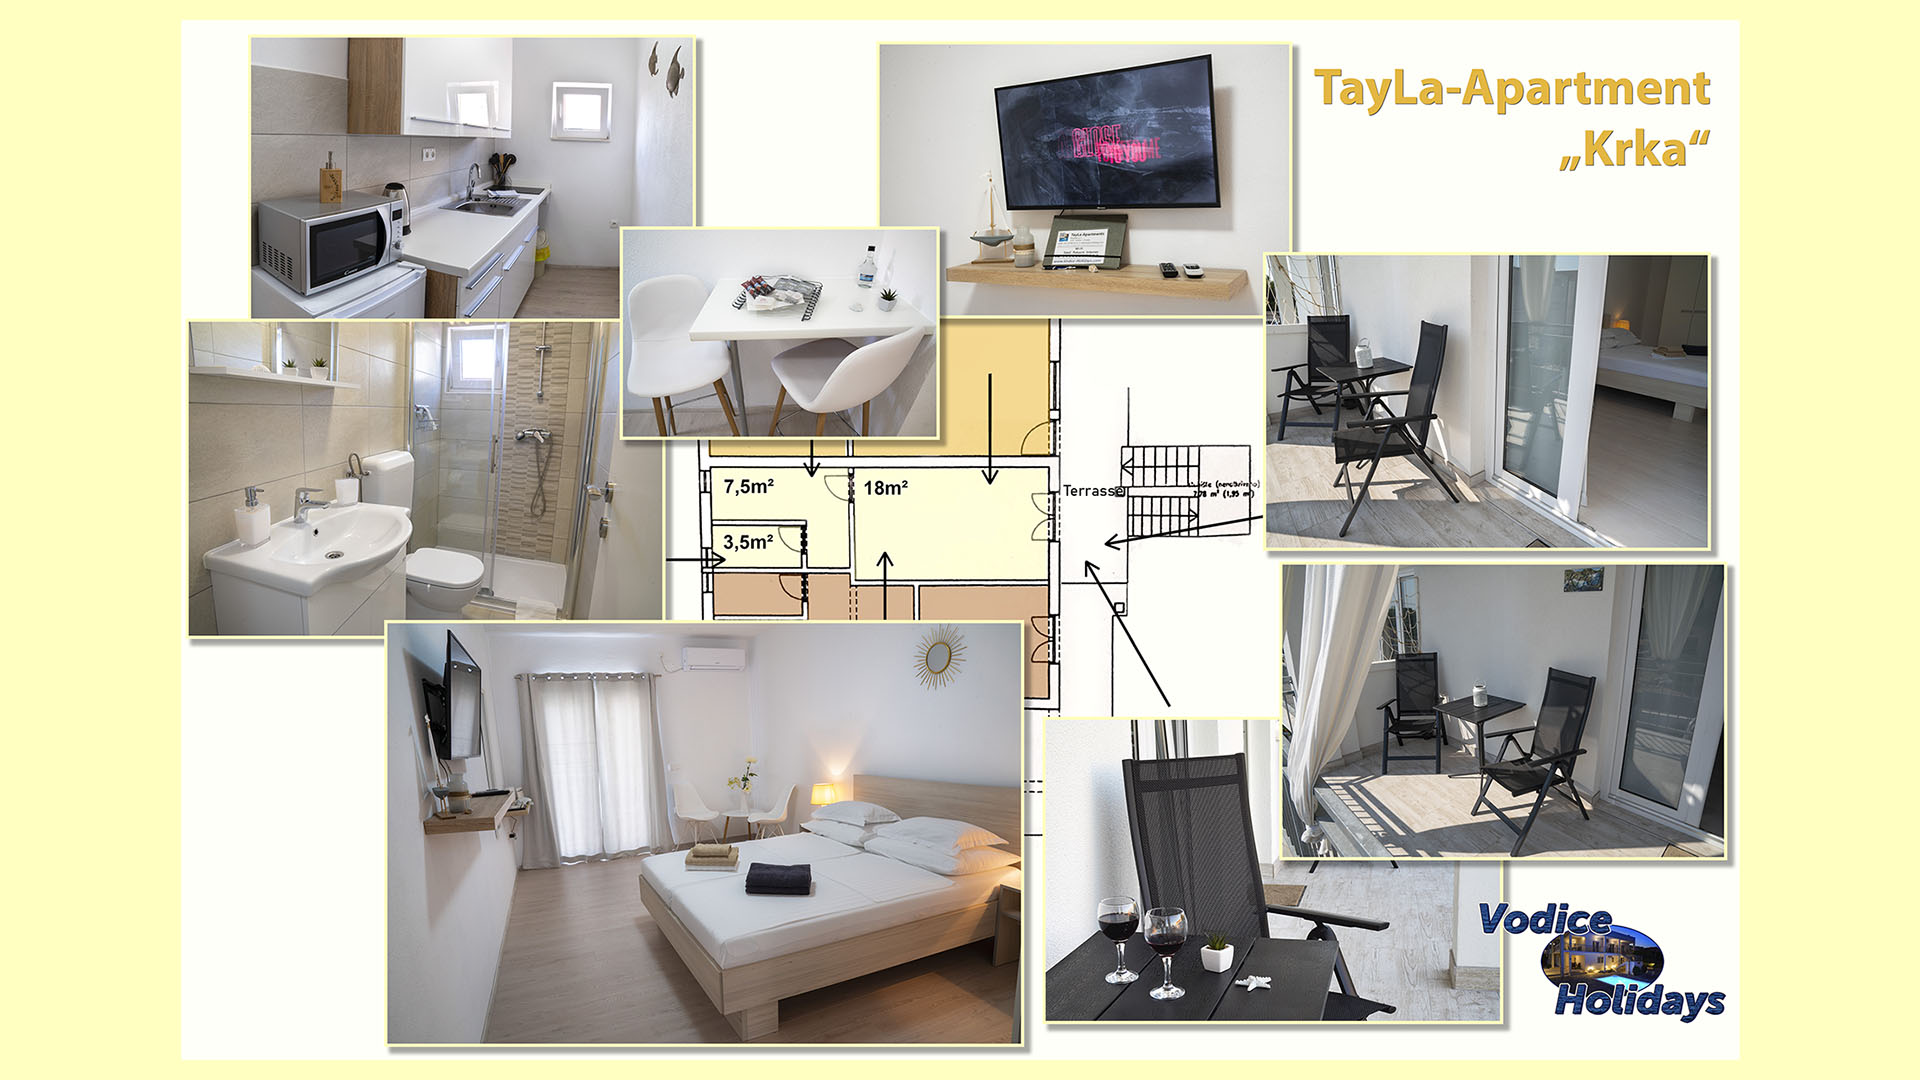 TayLa-Apartment "Krka"